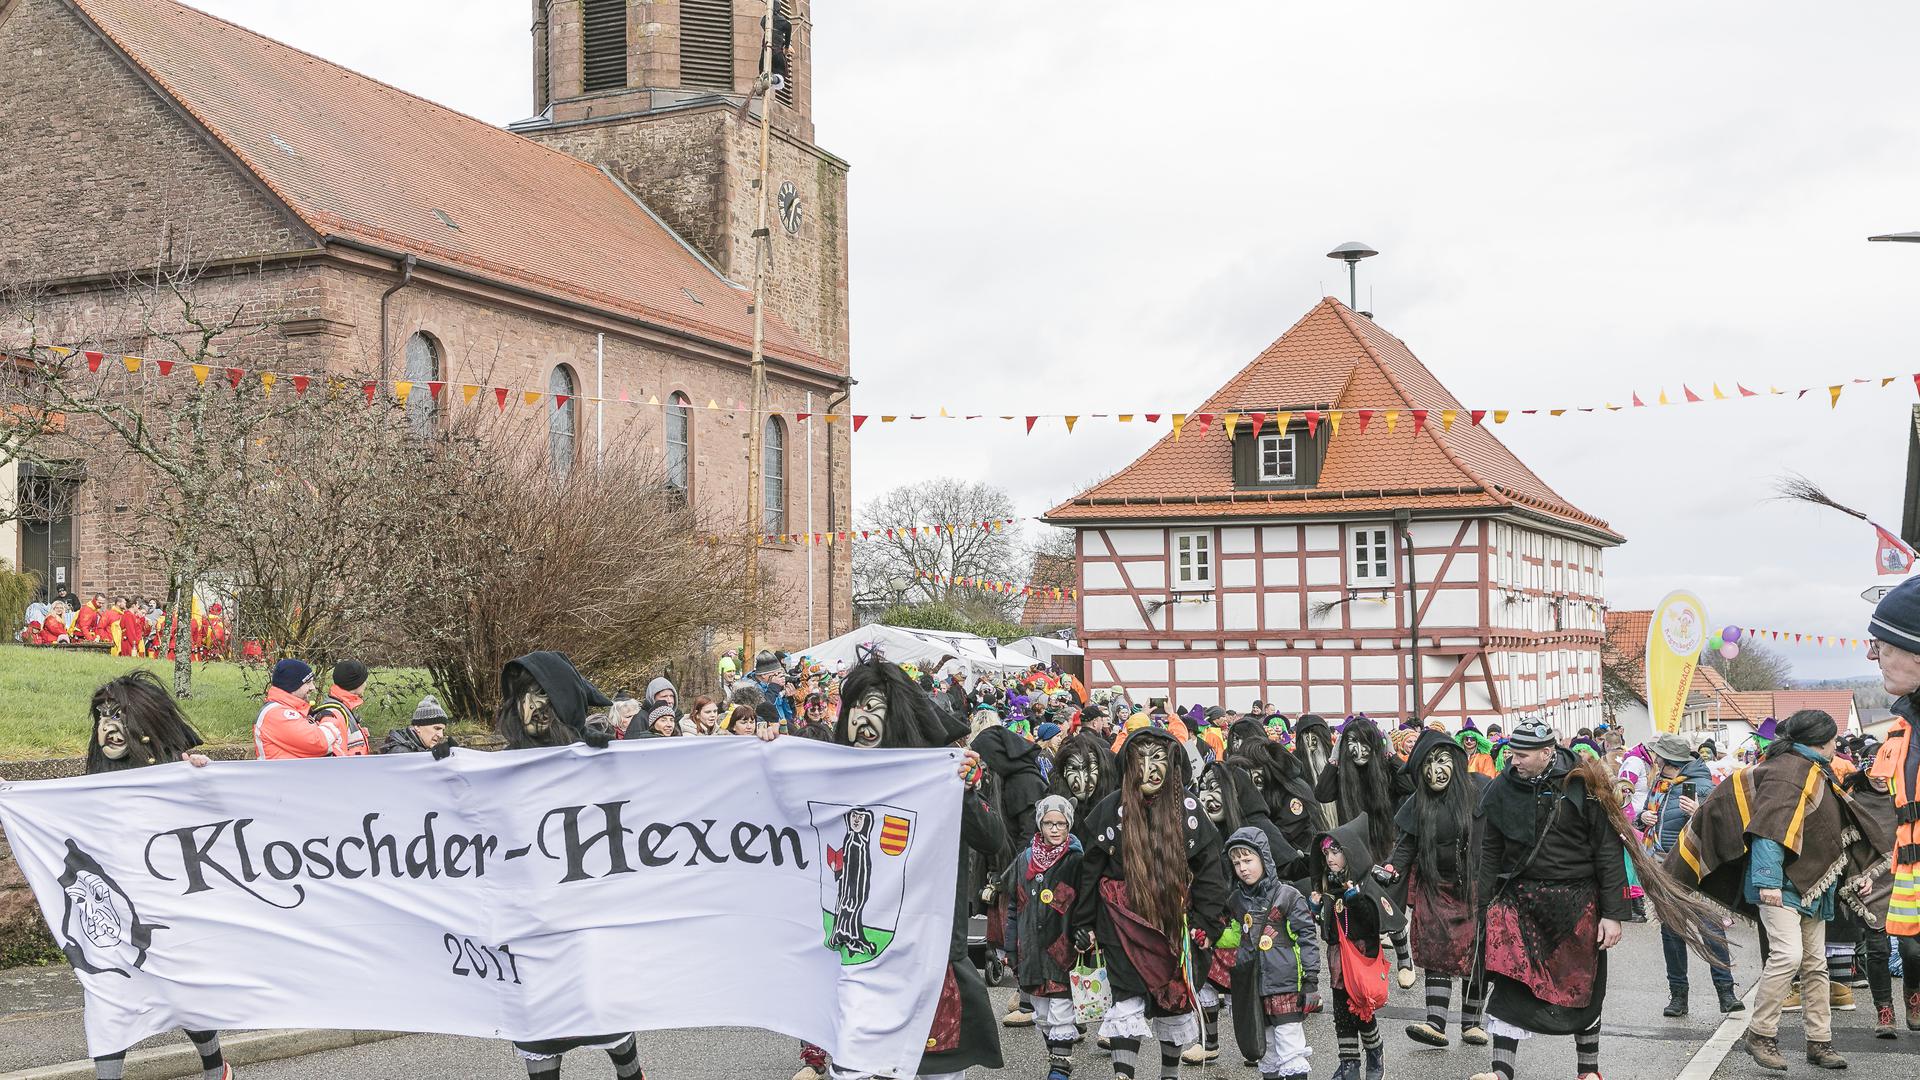 Die Kloschder-Hexen führen beim Start am Rathaus den ersten närrischen Umzug überhaupt  durch Völkersbach an.